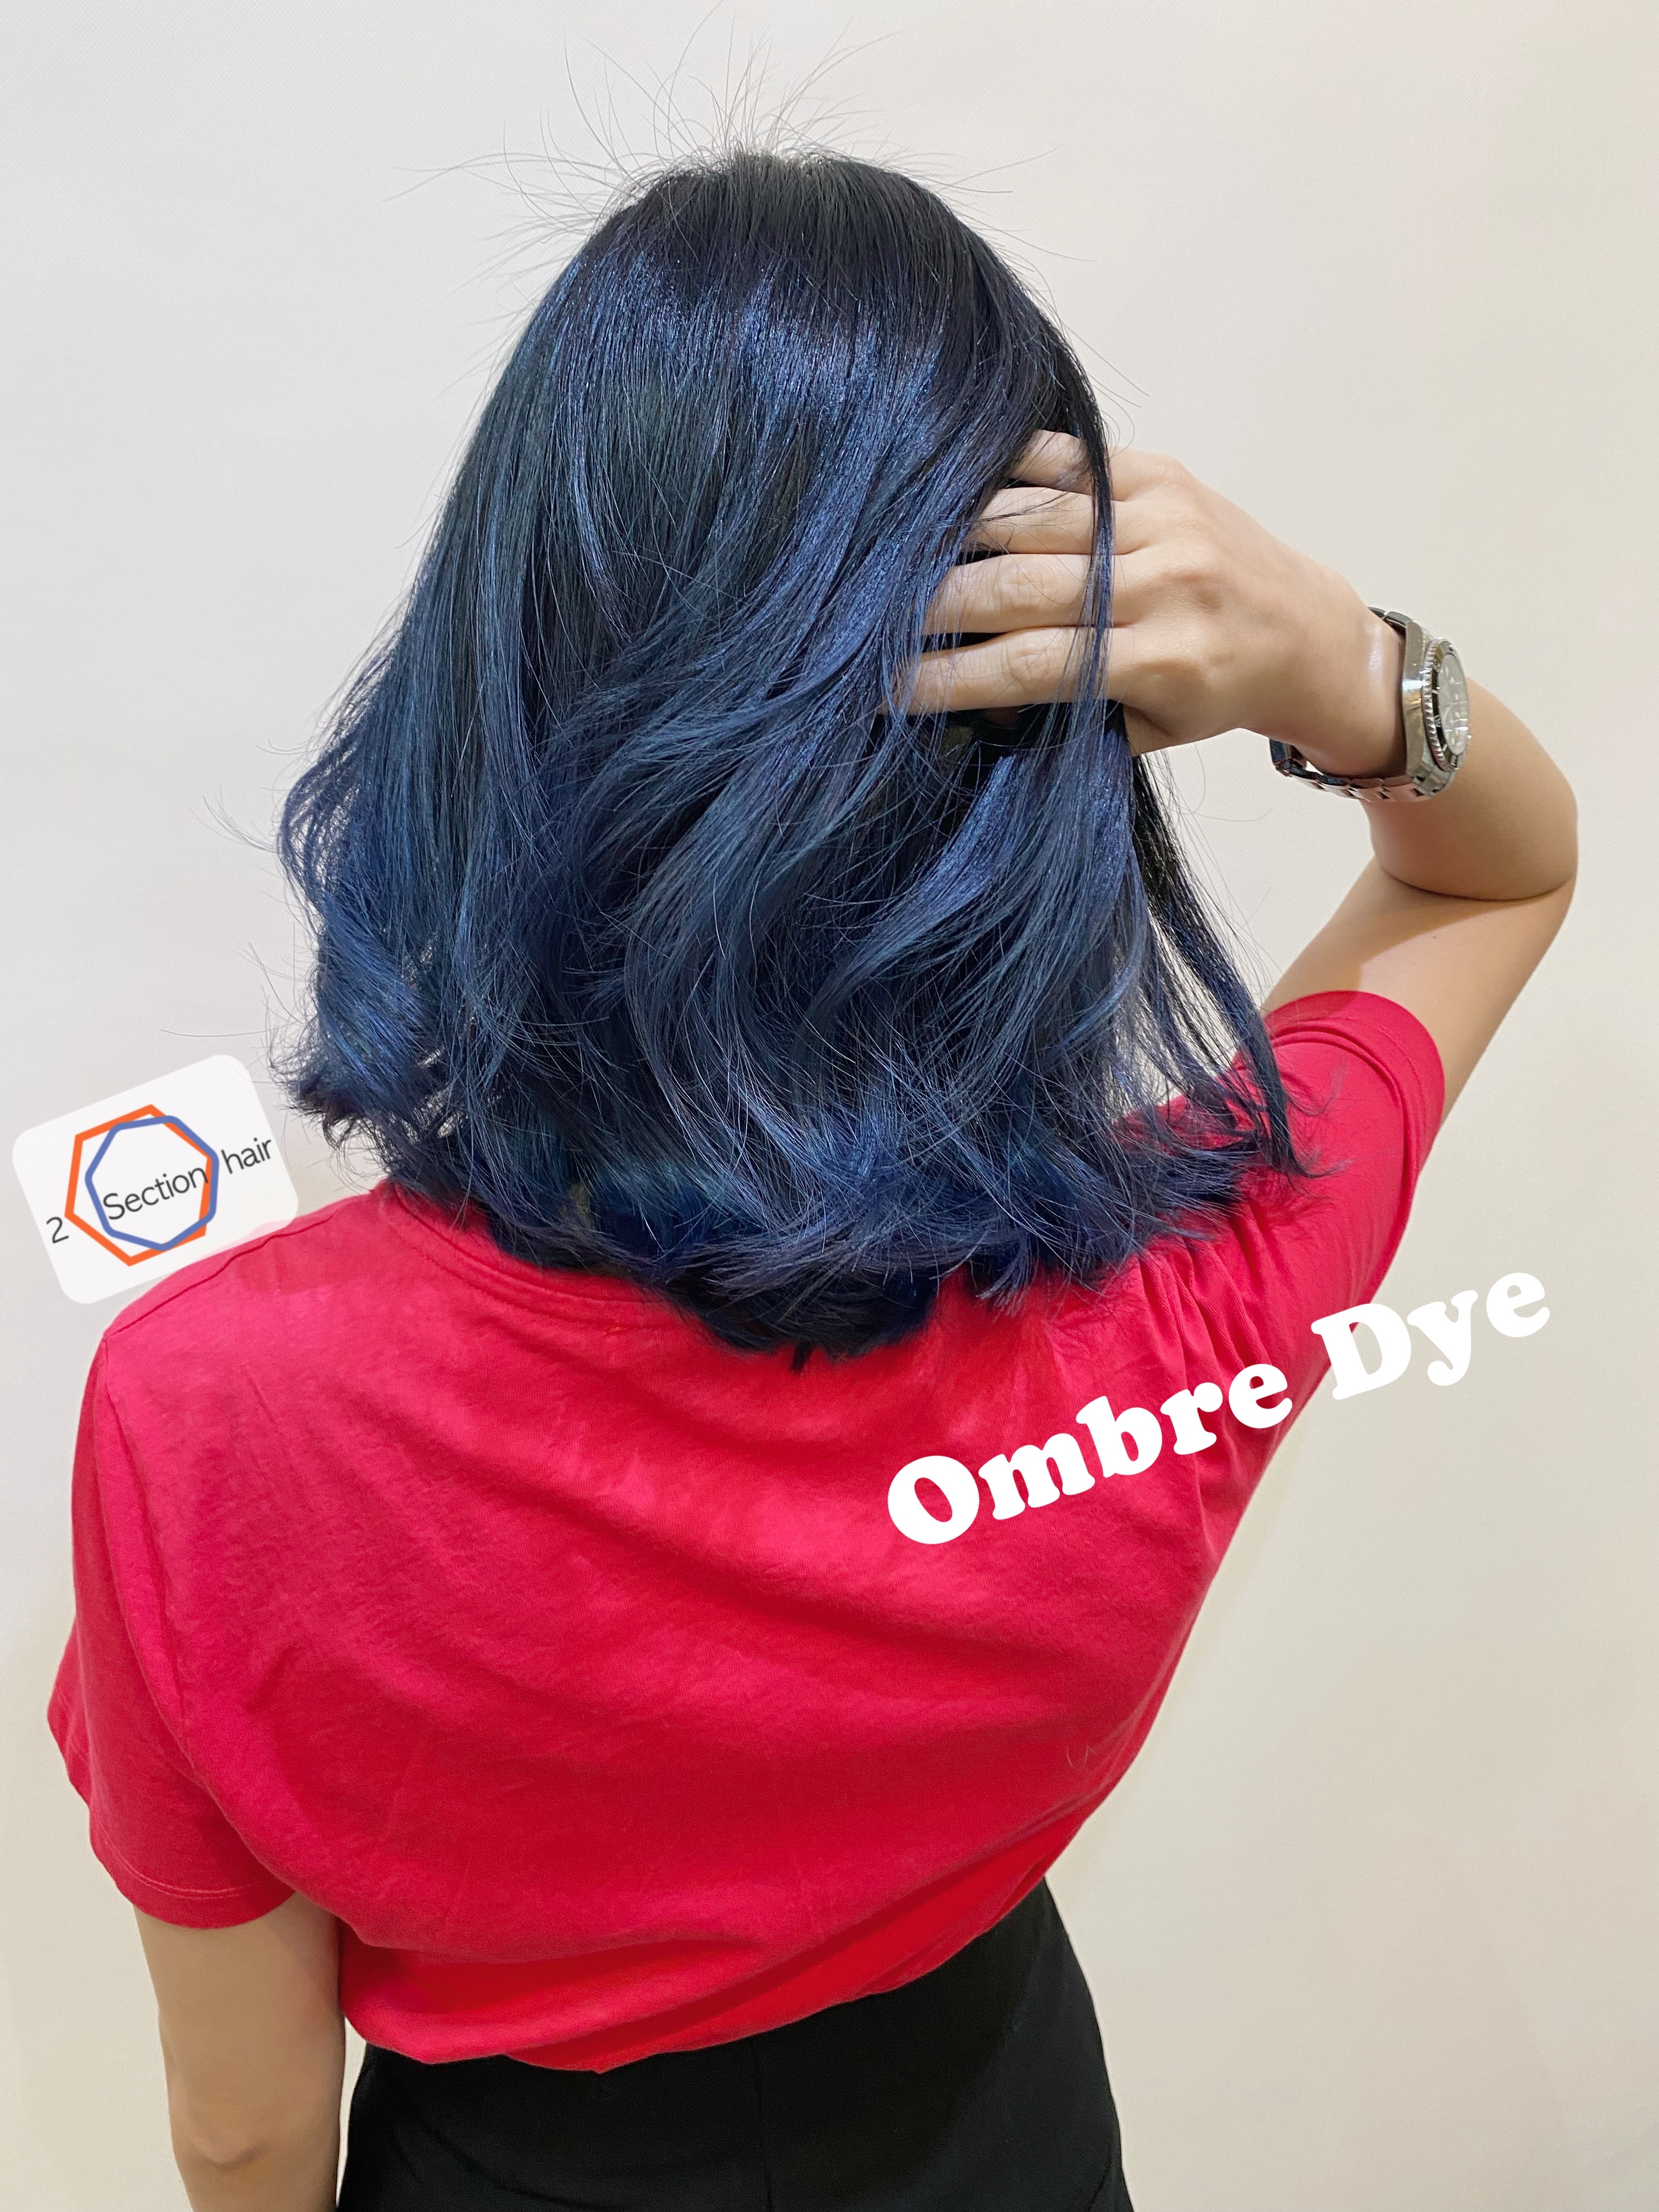 作品參考 / 最新消息:Ombré dye